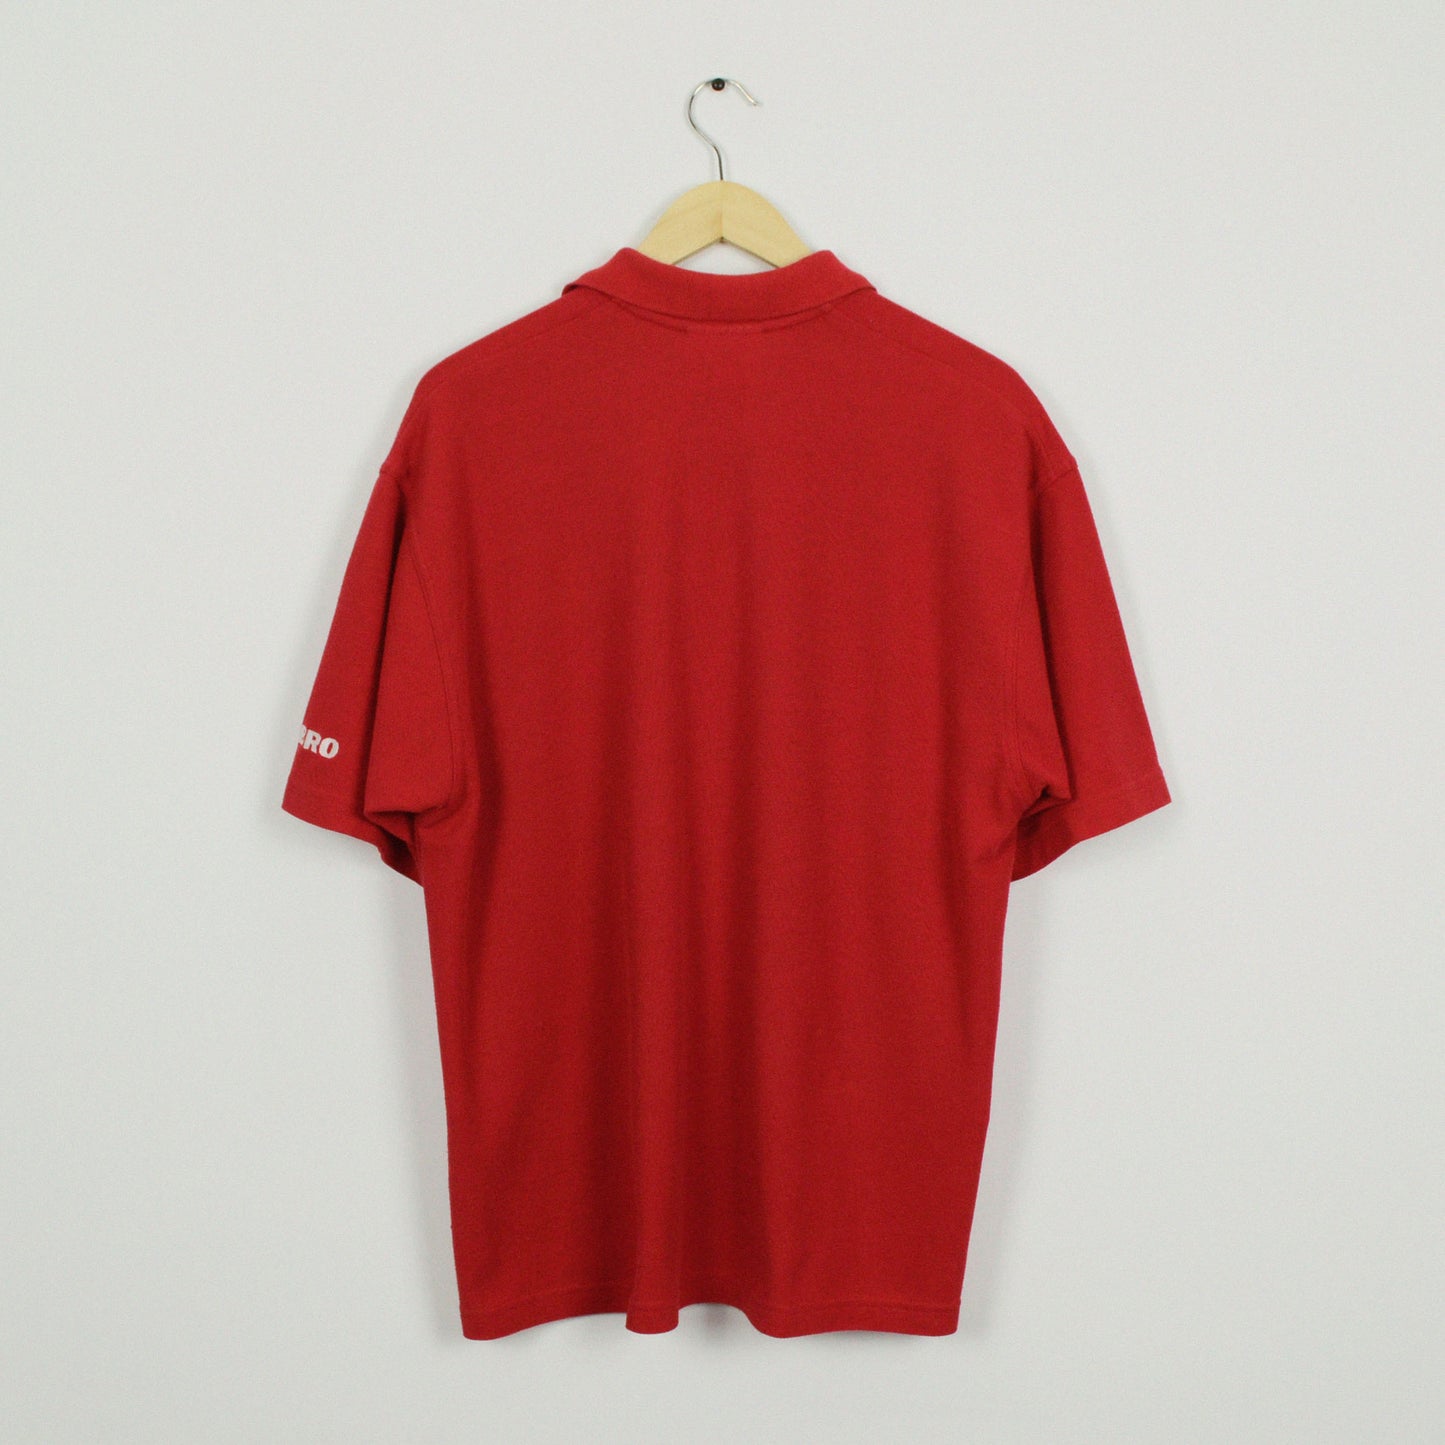 1998-00 Umbro Ajax Polo Shirt S